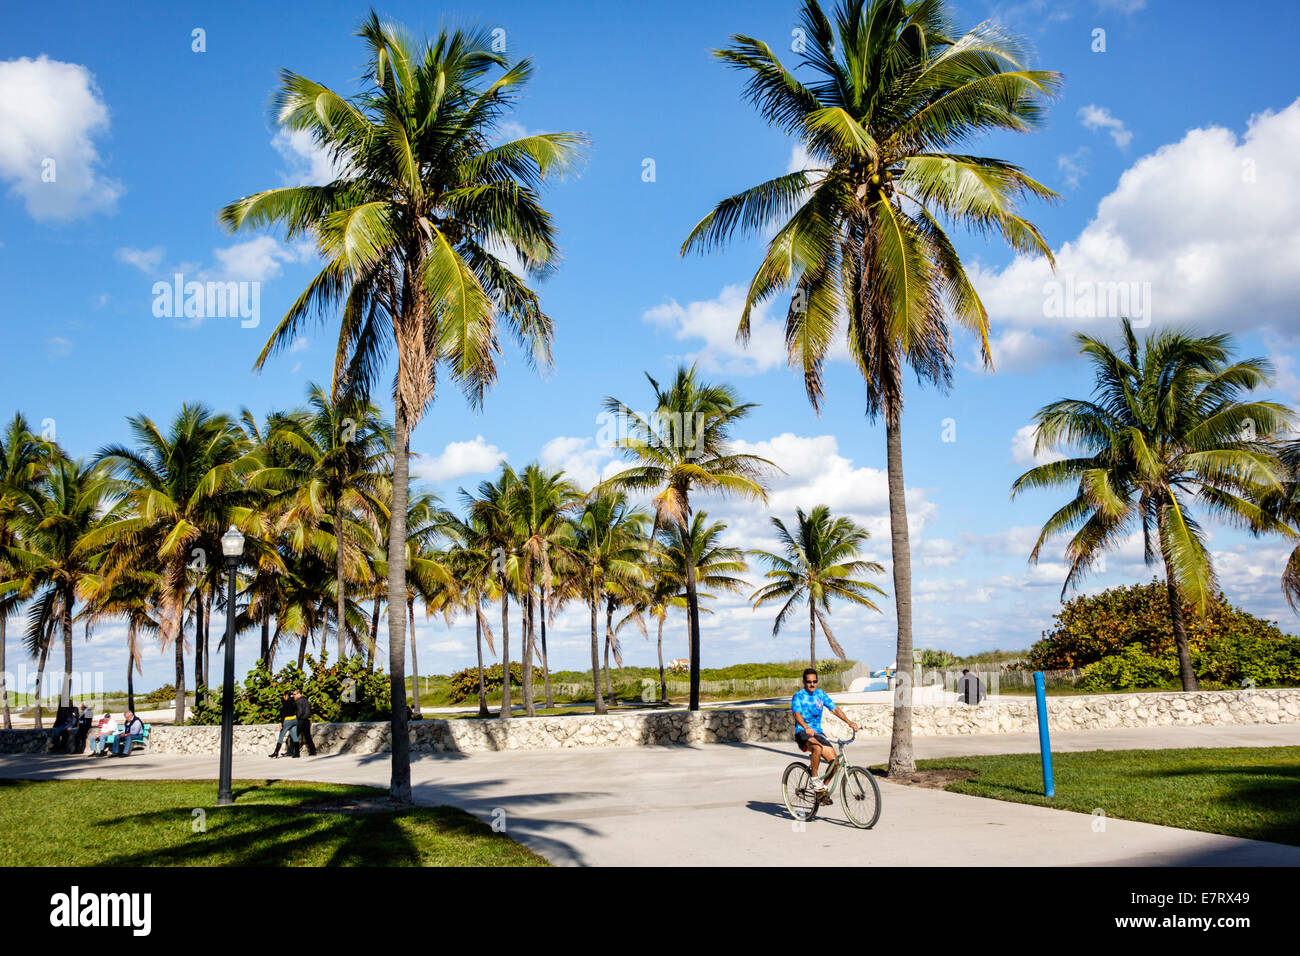 Miami Beach Florida,Lummus Park,Serpentine Trail,palmiers,piste cyclable,homme hommes,vélo,vélo,vélo,vélo,équitation,vélo,pilote,bon temps,tropical, Banque D'Images